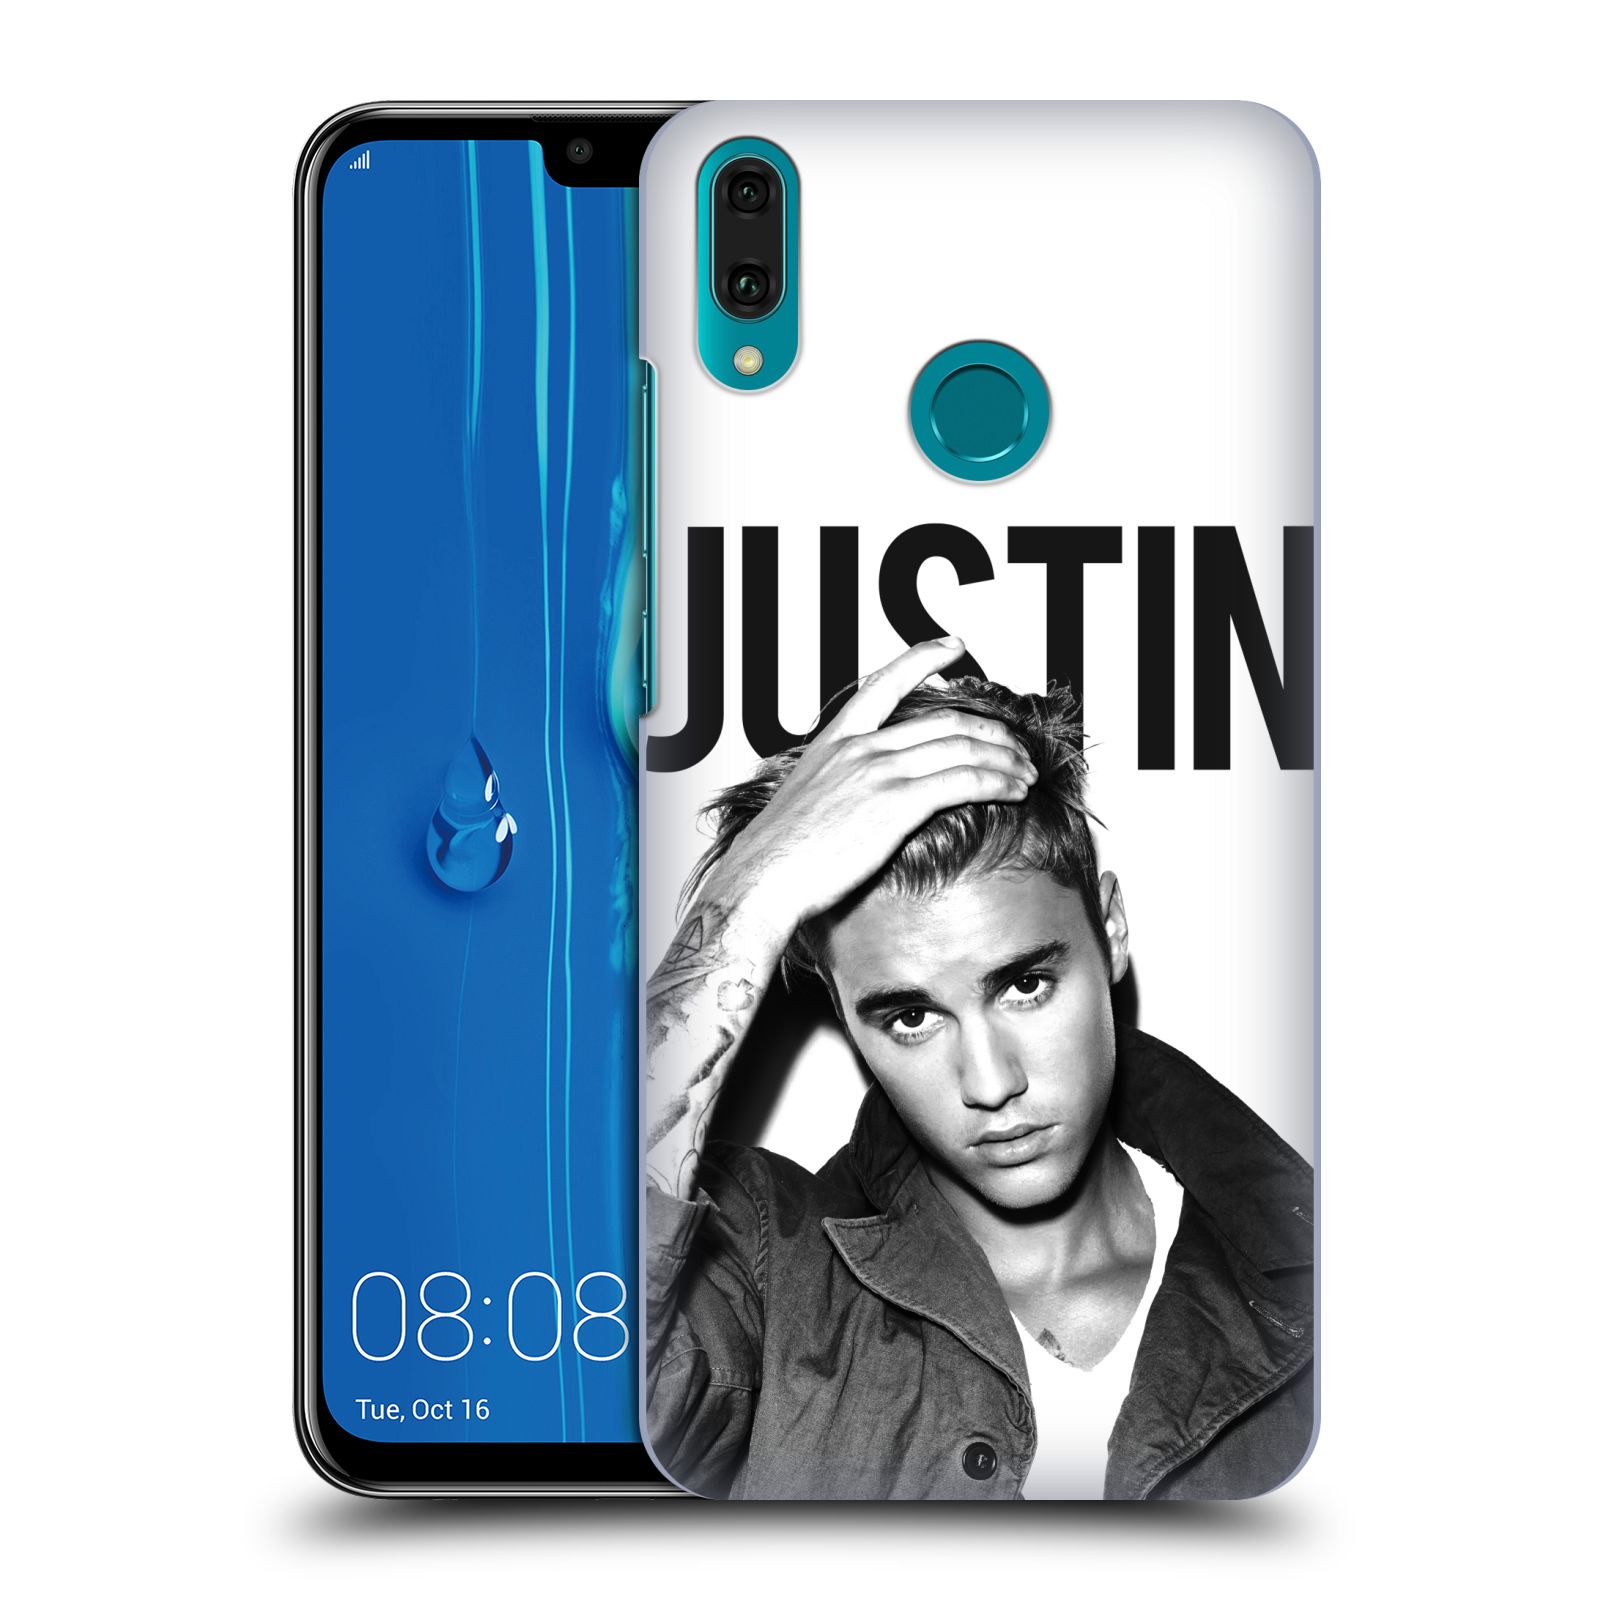 Pouzdro na mobil Huawei Y9 2019 - HEAD CASE - Justin Bieber foto Purpose černá a bílá